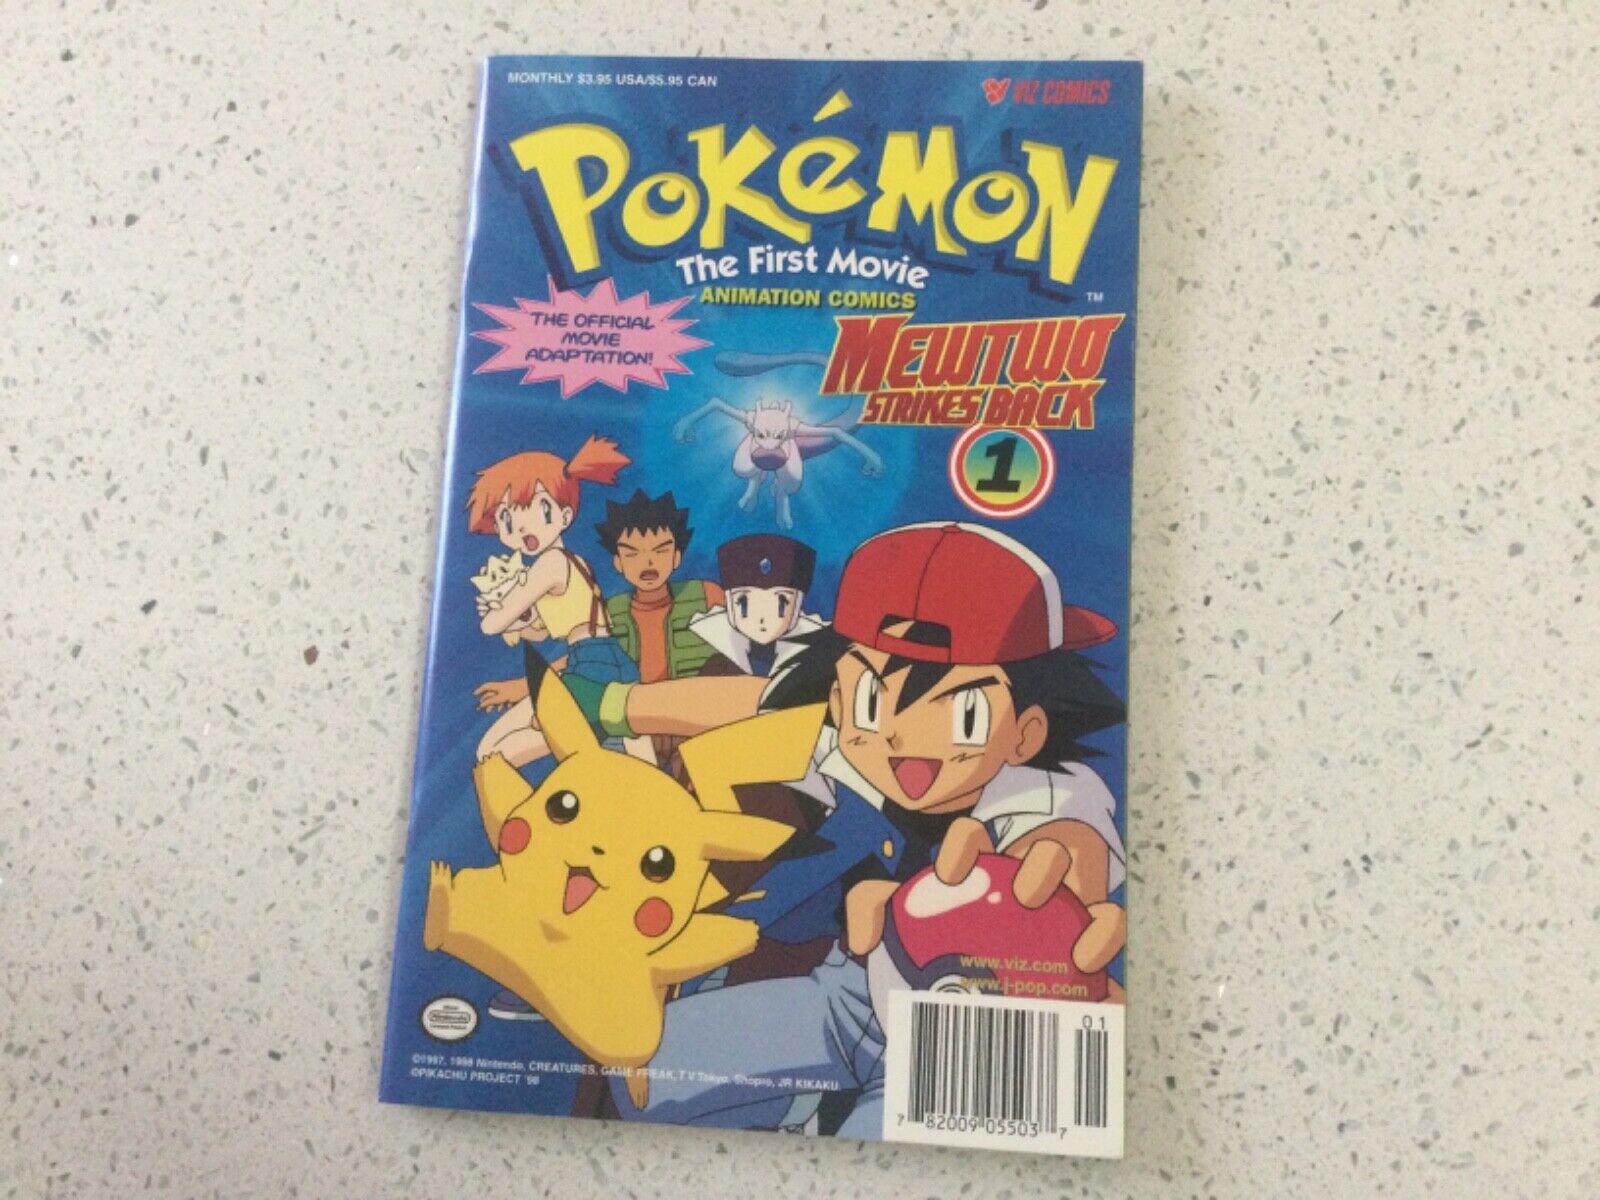 Pokemon The First Movie Mewtwo Strikes Back #1, Viz Comics, 1998